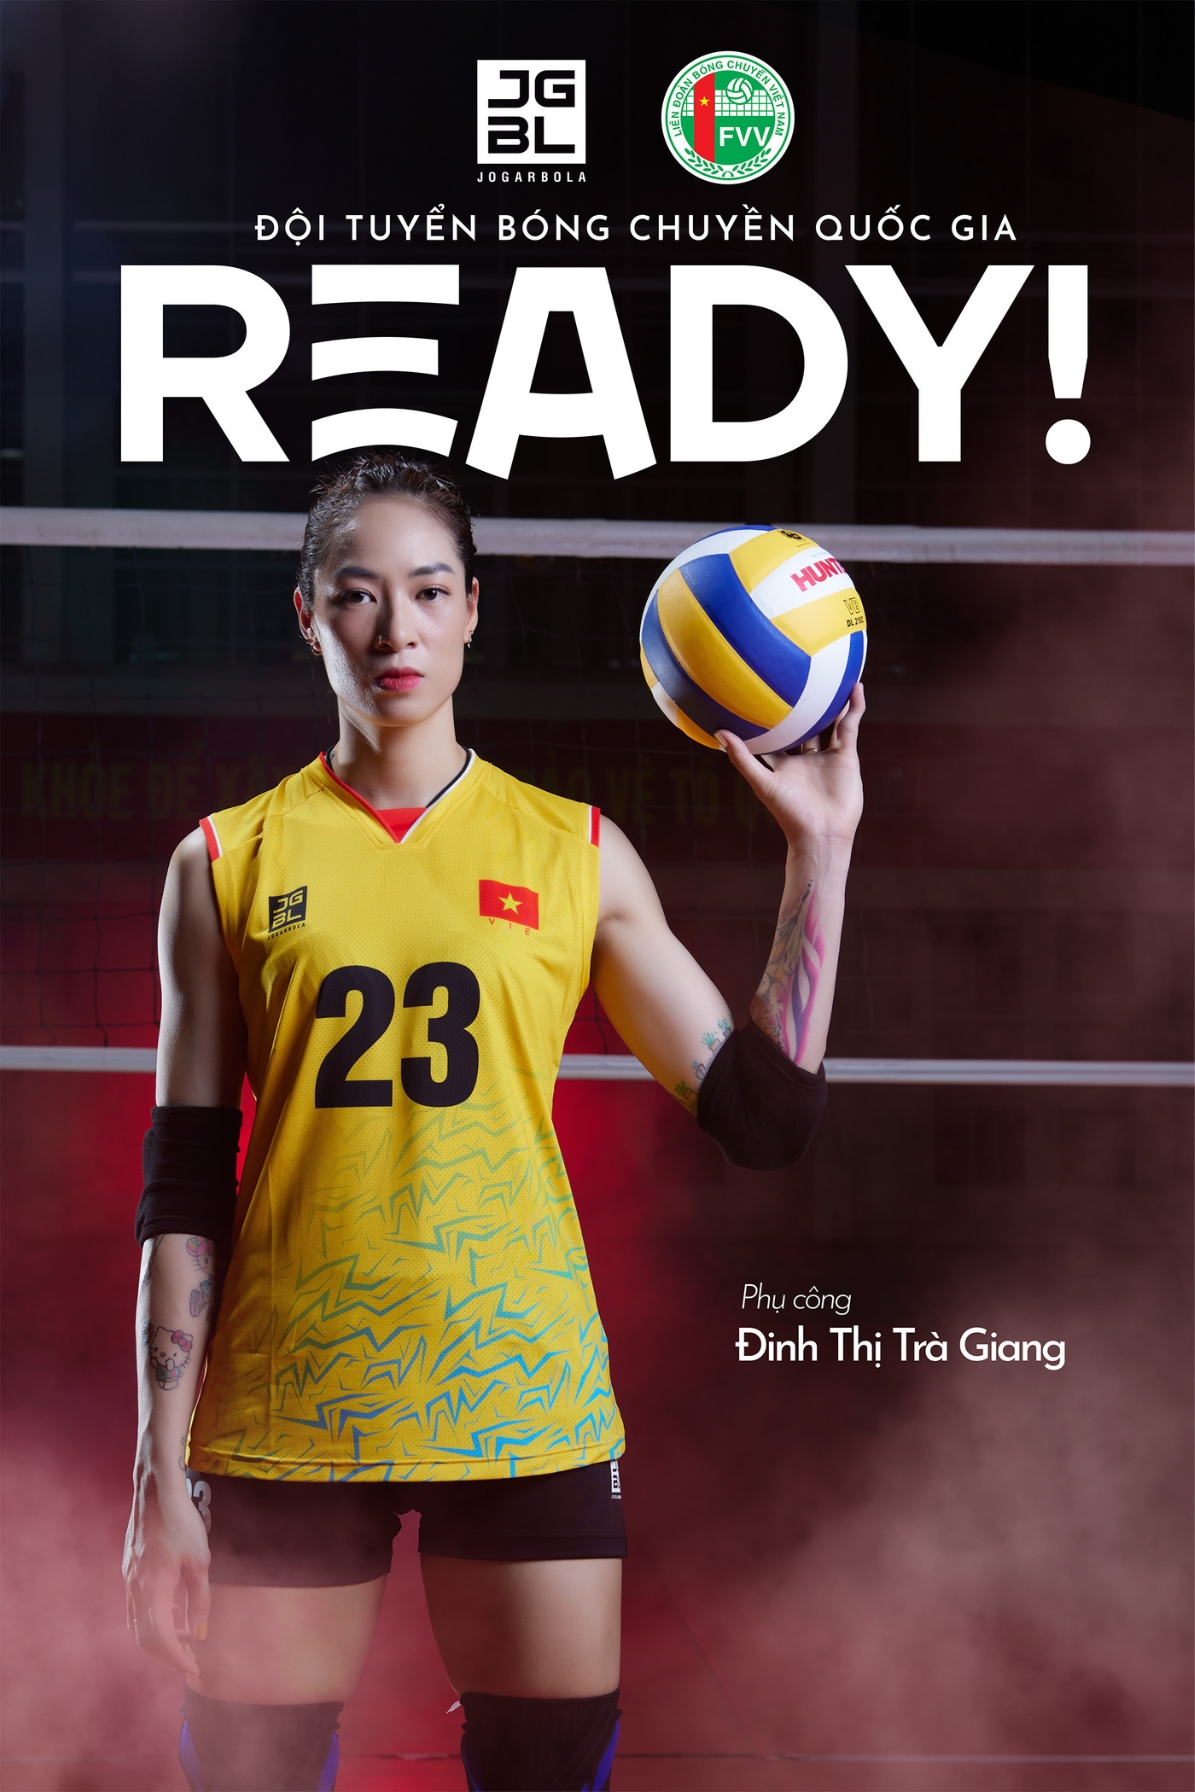 Bộ quần áo thi đấu chính thức của đội tuyển bóng chuyền Nữ Việt Nam "Vàng" JG-VNBC-01 - Hàng Chính Hãng